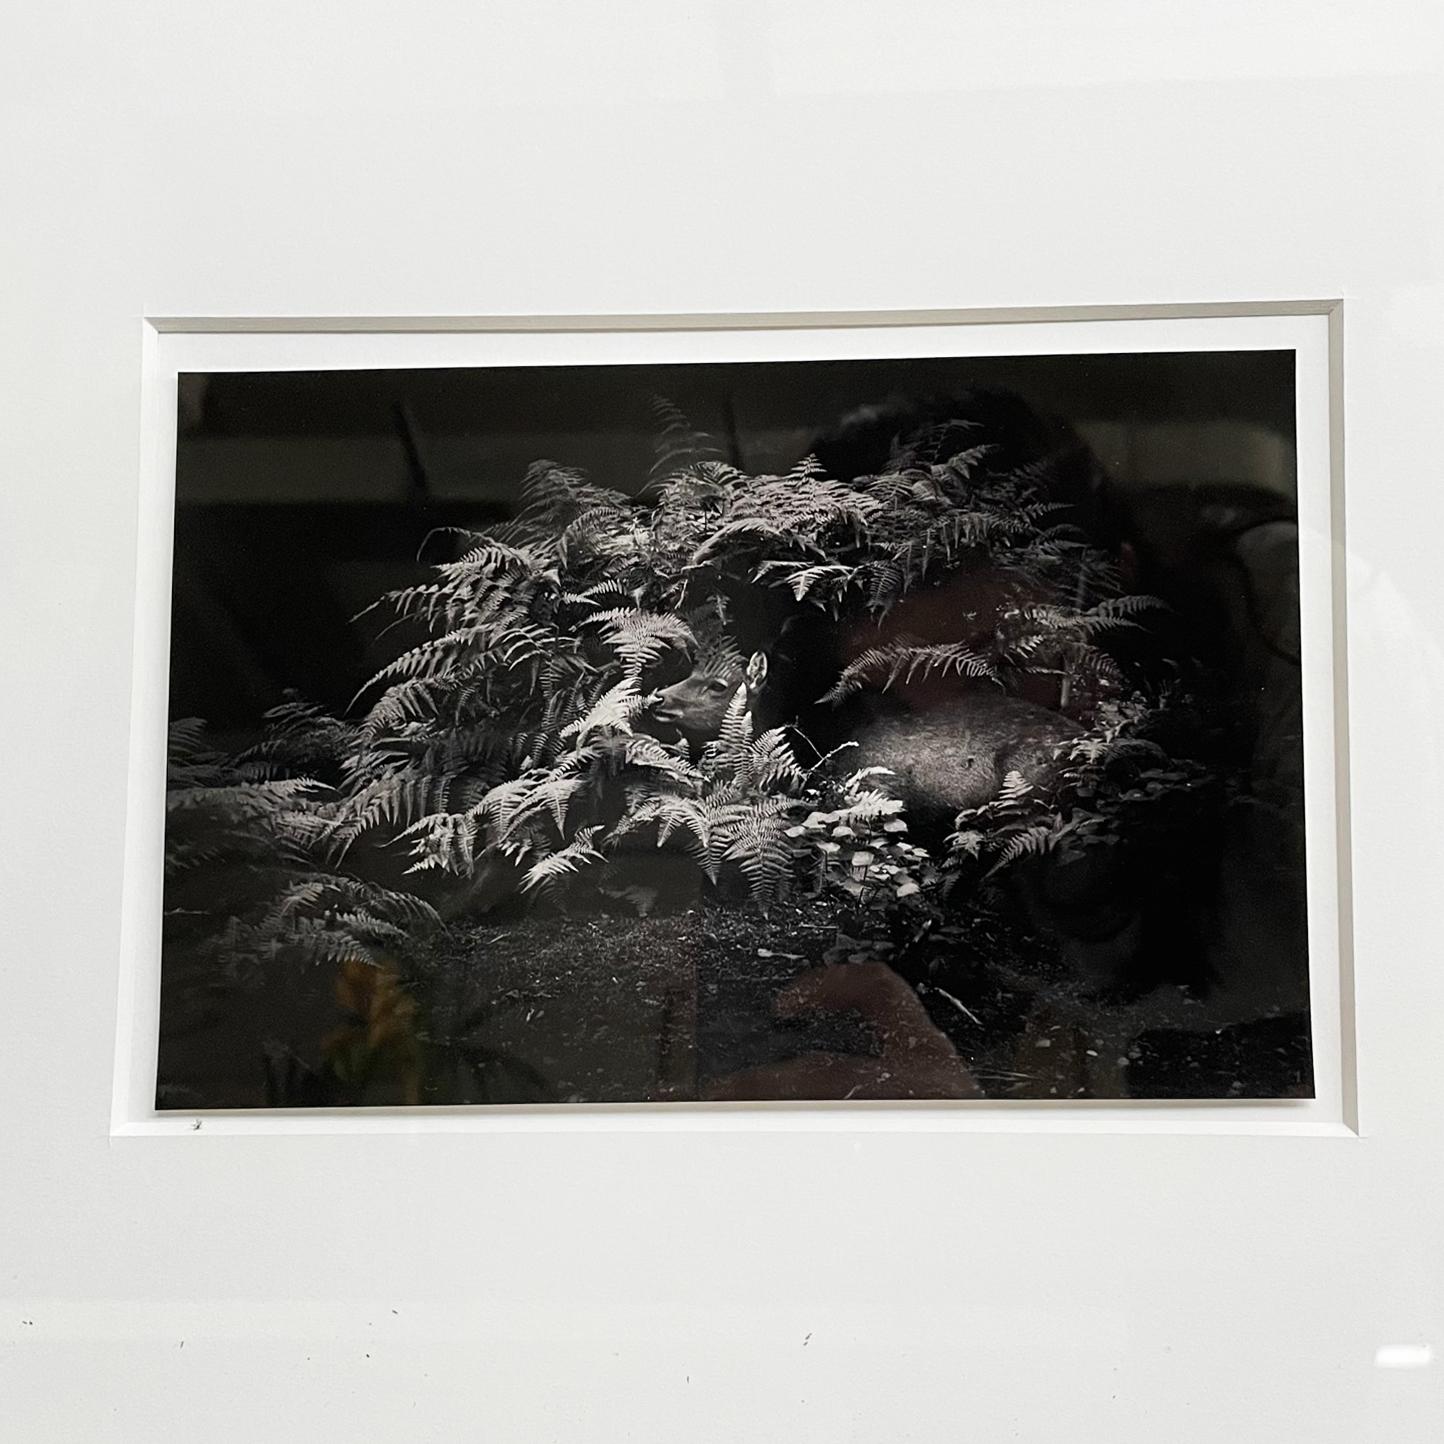 Japan postmoderne Schwarz-Weiß-Fotografie Flow von Masao Yamamoto, 2009
Fotografischer Schwarz-Weiß-Abzug mit dem Titel Flow, der ein zwischen Pflanzen liegendes Rehkitz darstellt. In einem weiß lackierten Holzrahmen.
Erstellt von Masao Yamamoto